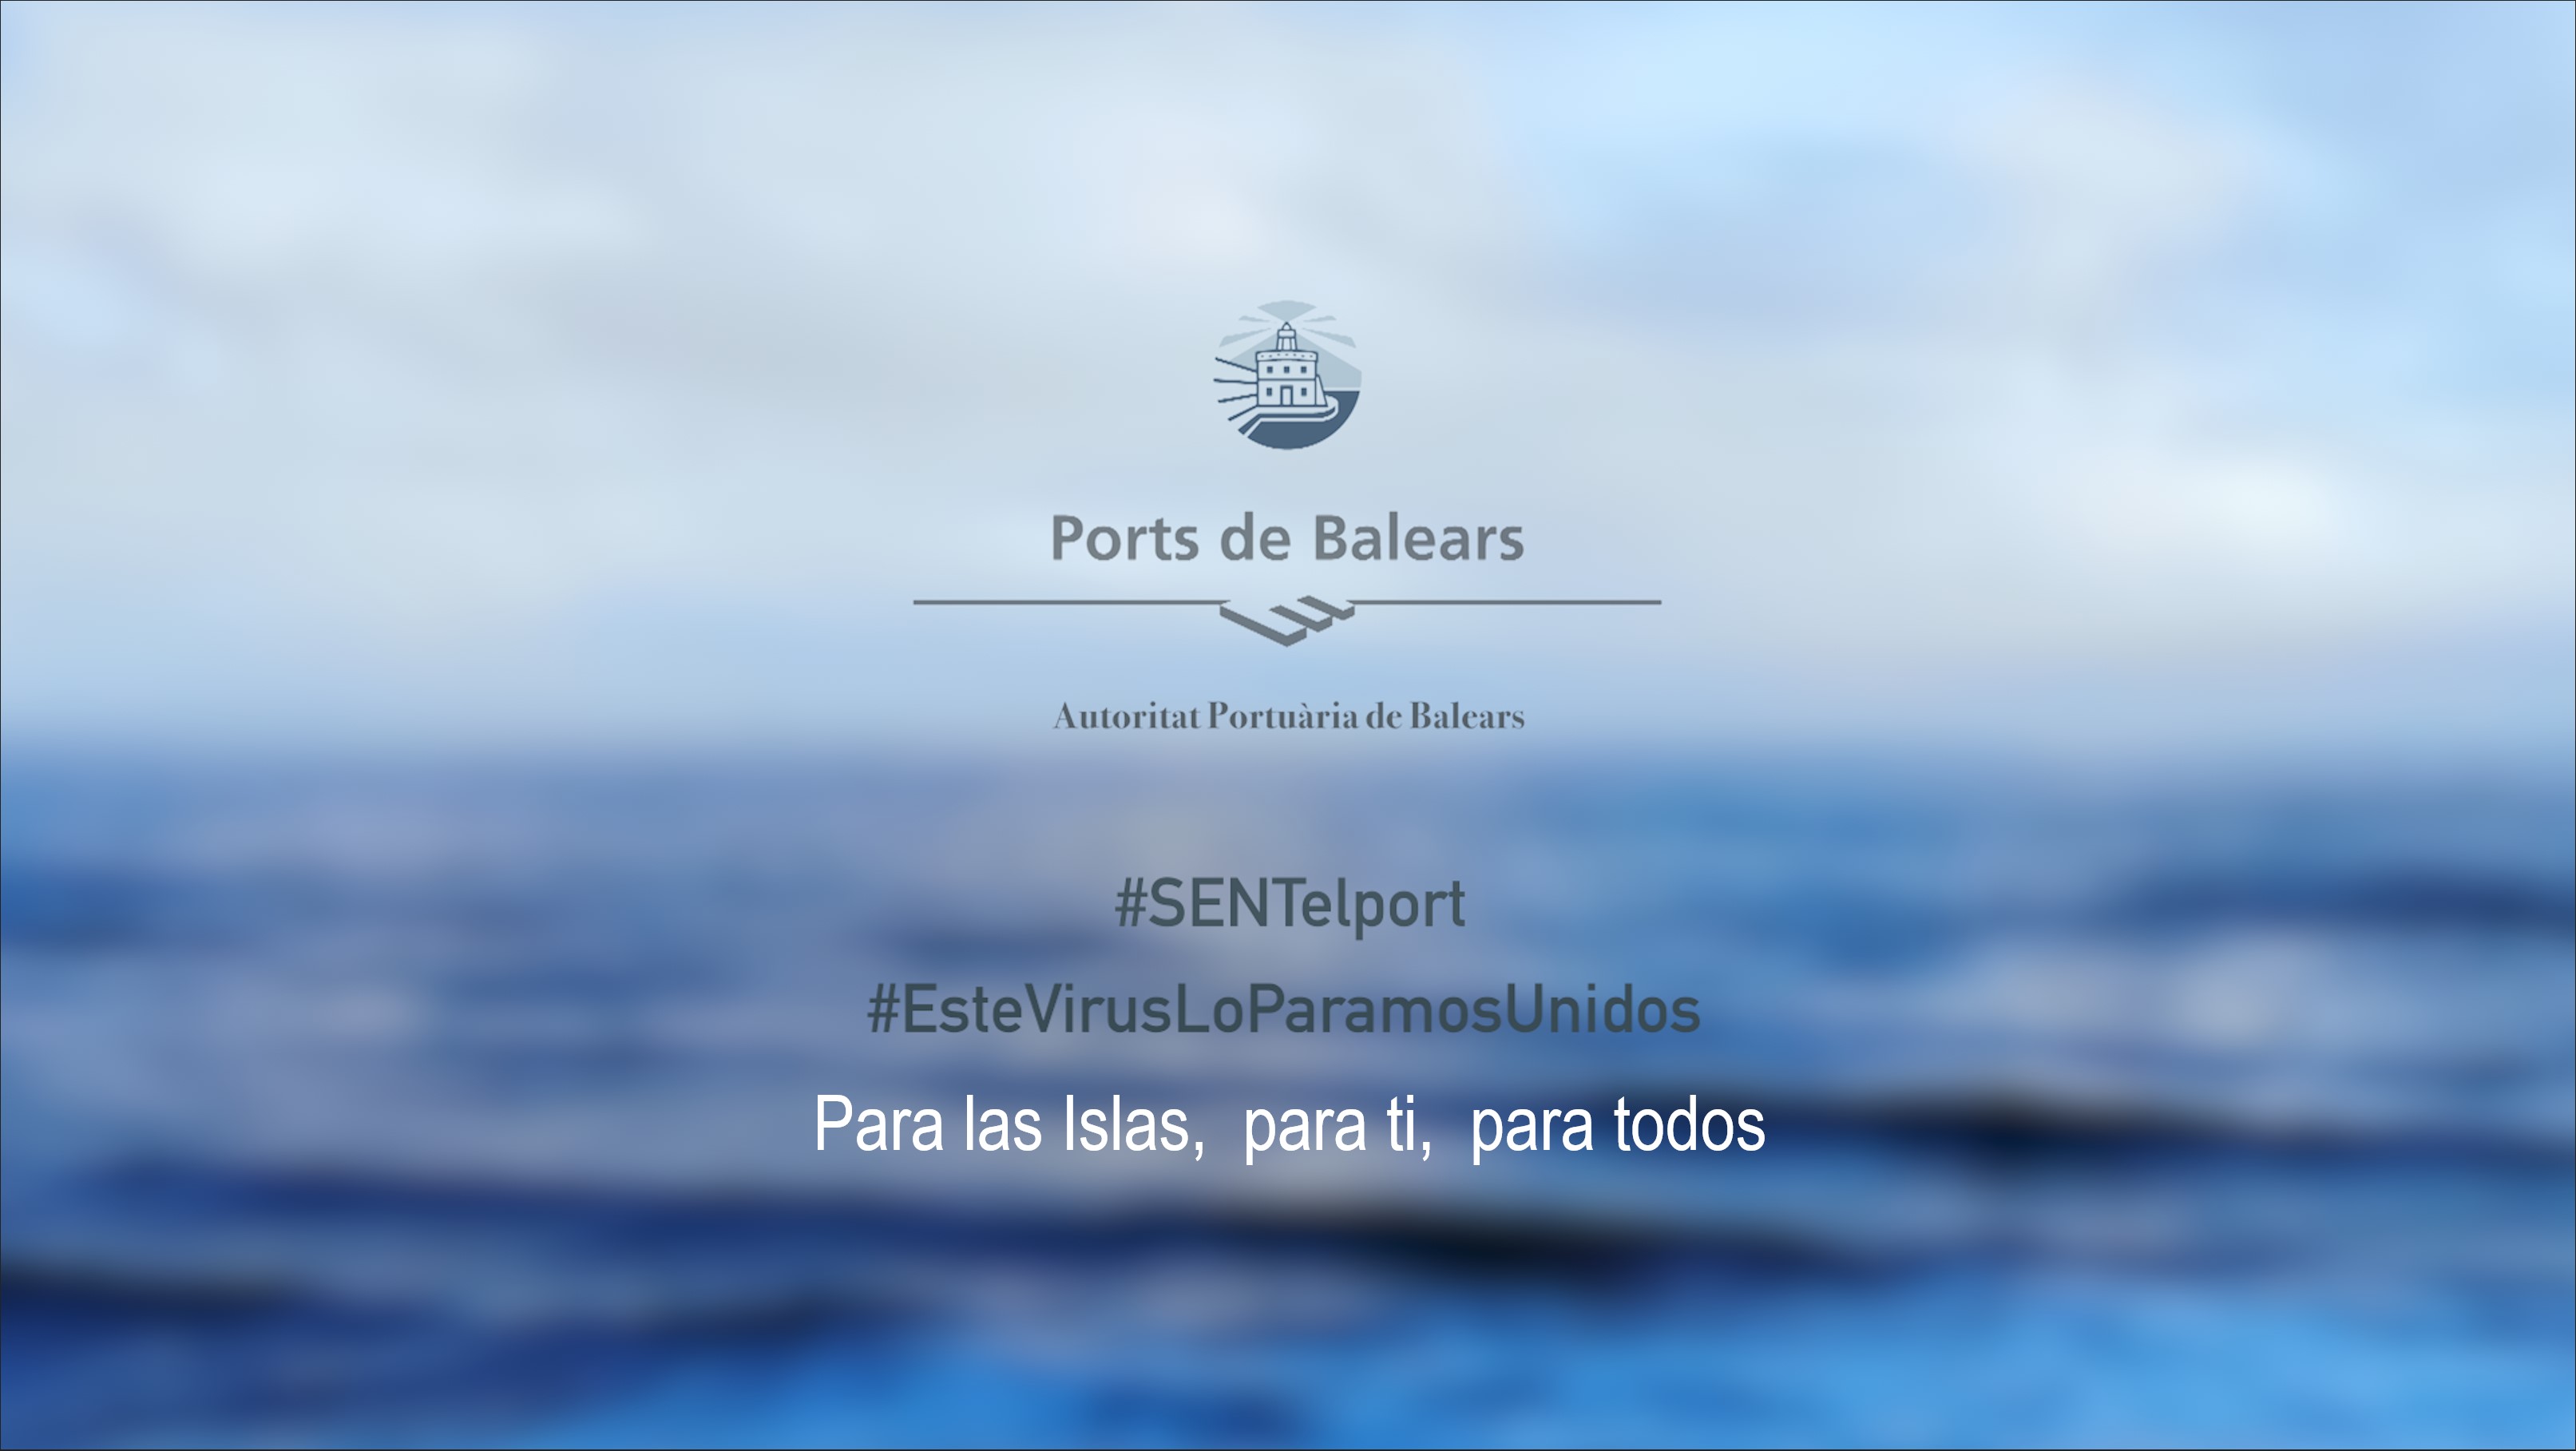 Die Hafenbehörde der Balearen dankt der Bevölkerung der Inseln für ihre Anstrengungen, zu Hause zu bleiben, während die Häfen und Leuchttürme weiterhin ihre Versorgung gewährleisten 